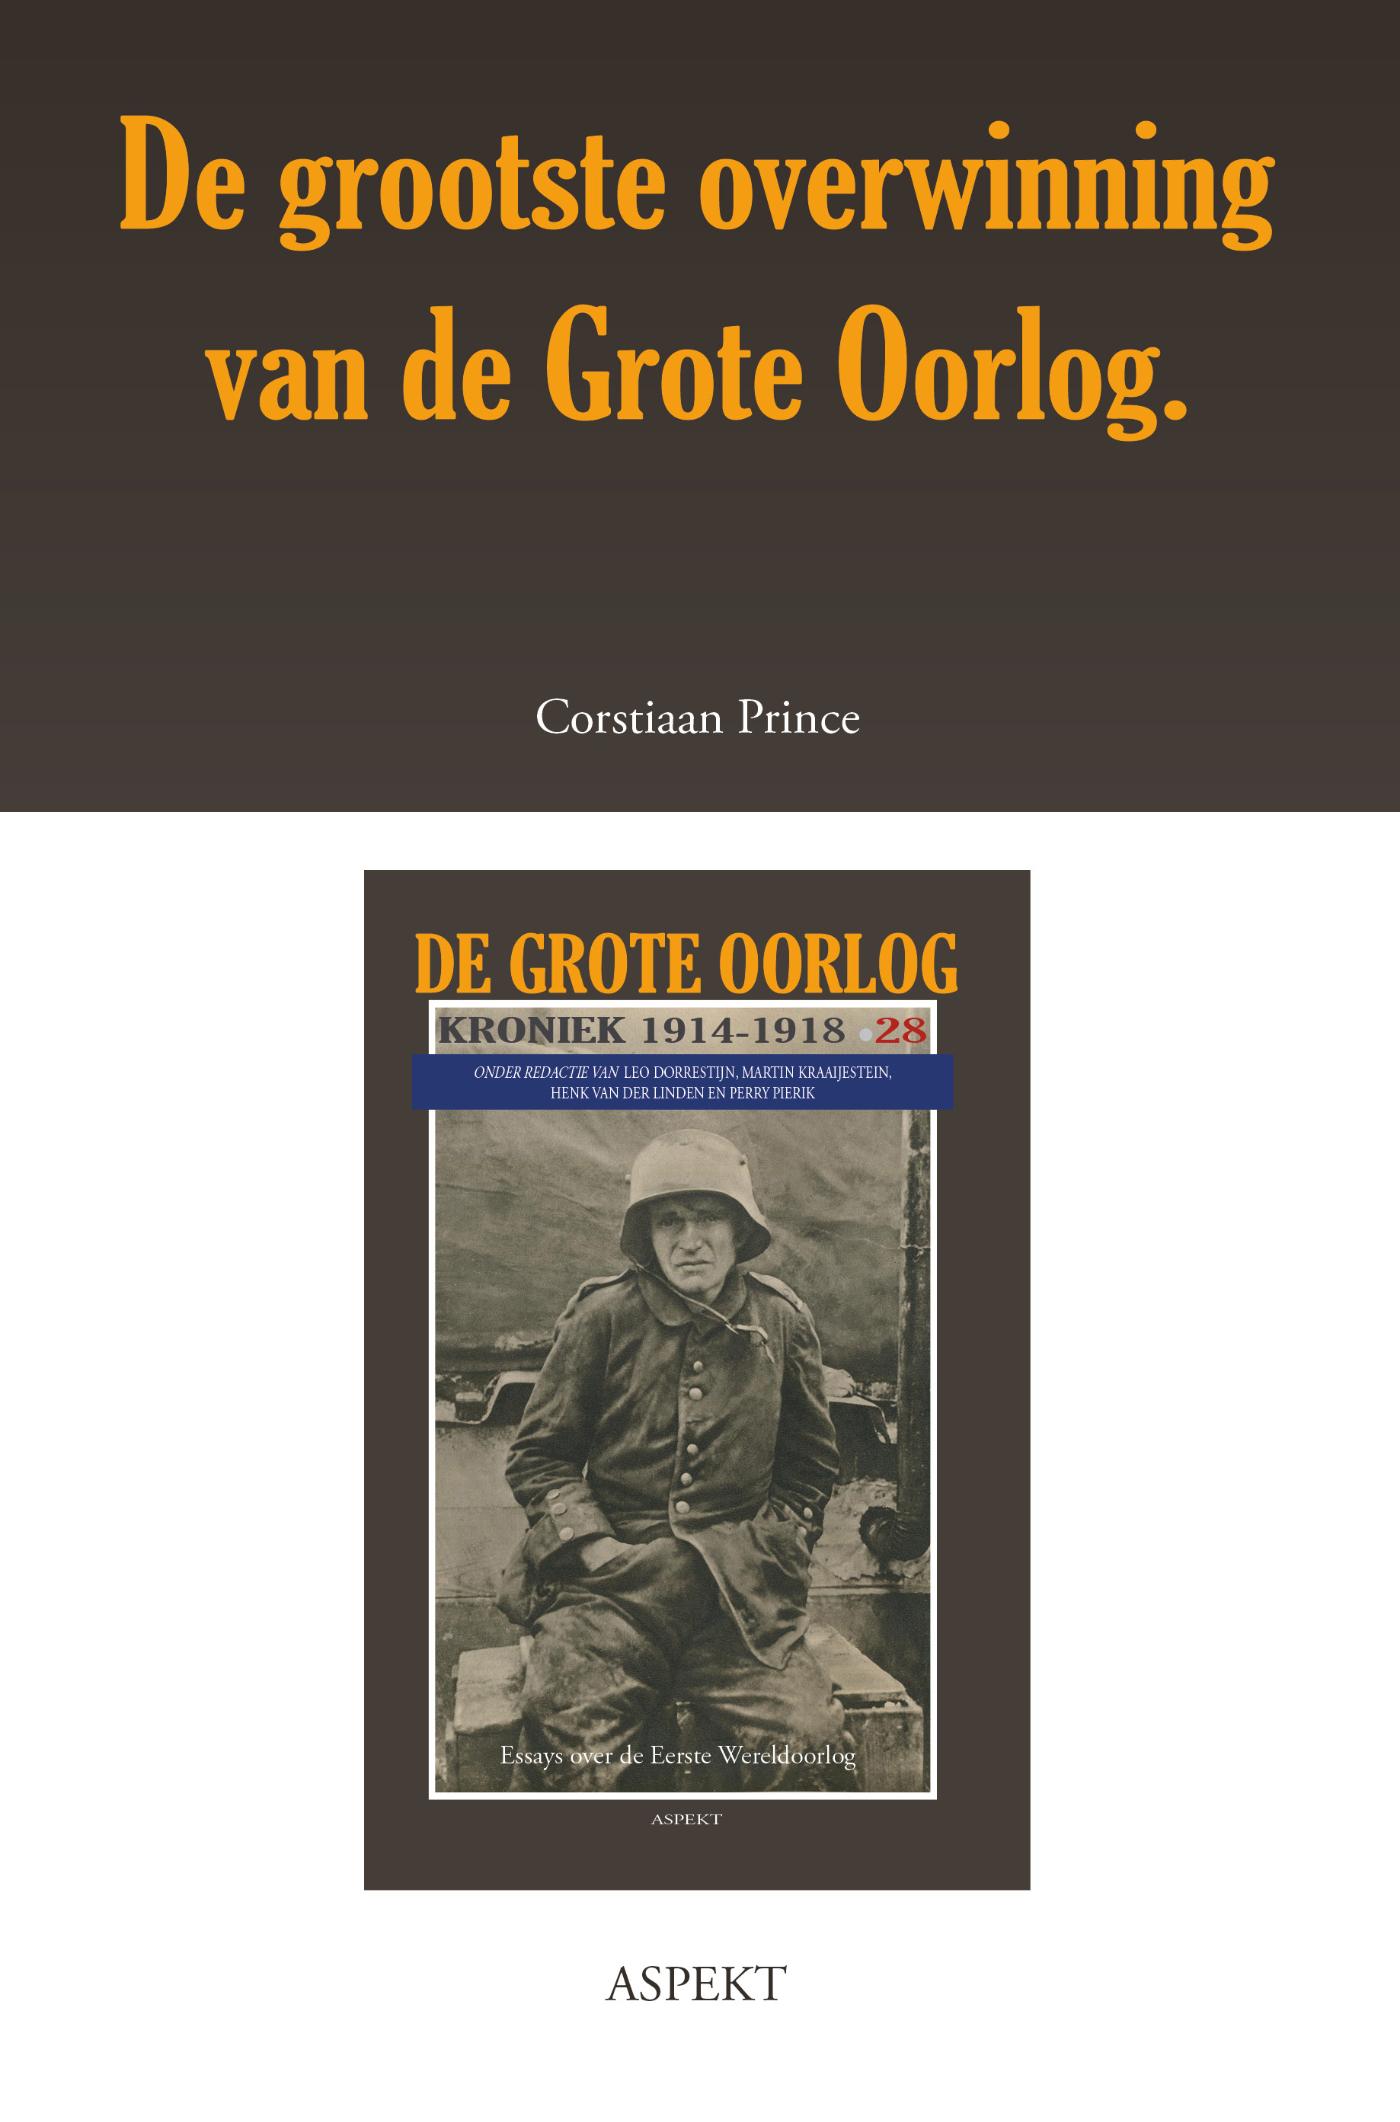 De grootste overwinning van de Grote Oorlog (Ebook)